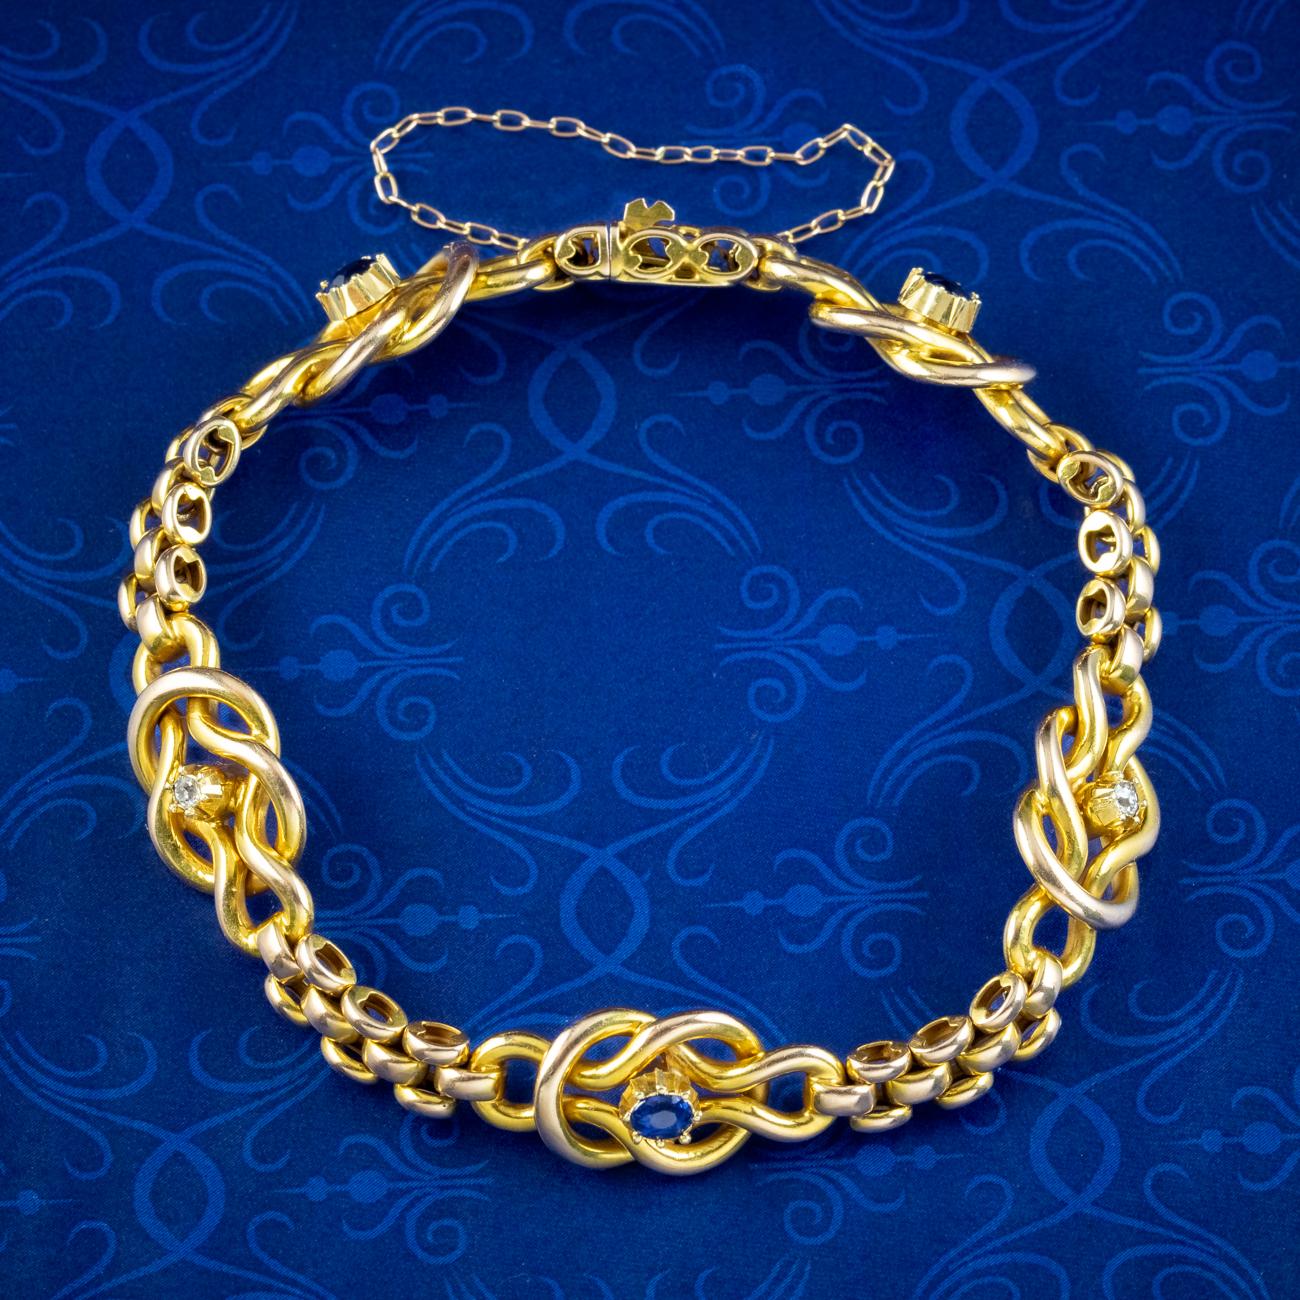 Ein fabelhaftes antikes viktorianisches Liebesknoten-Armband, bestehend aus massiven 15-karätigen goldenen Ziegelgliedern und fünf ineinander verwobenen Liebesknoten, die jeweils mit einem blauen Saphir oder einem funkelnden Diamanten im